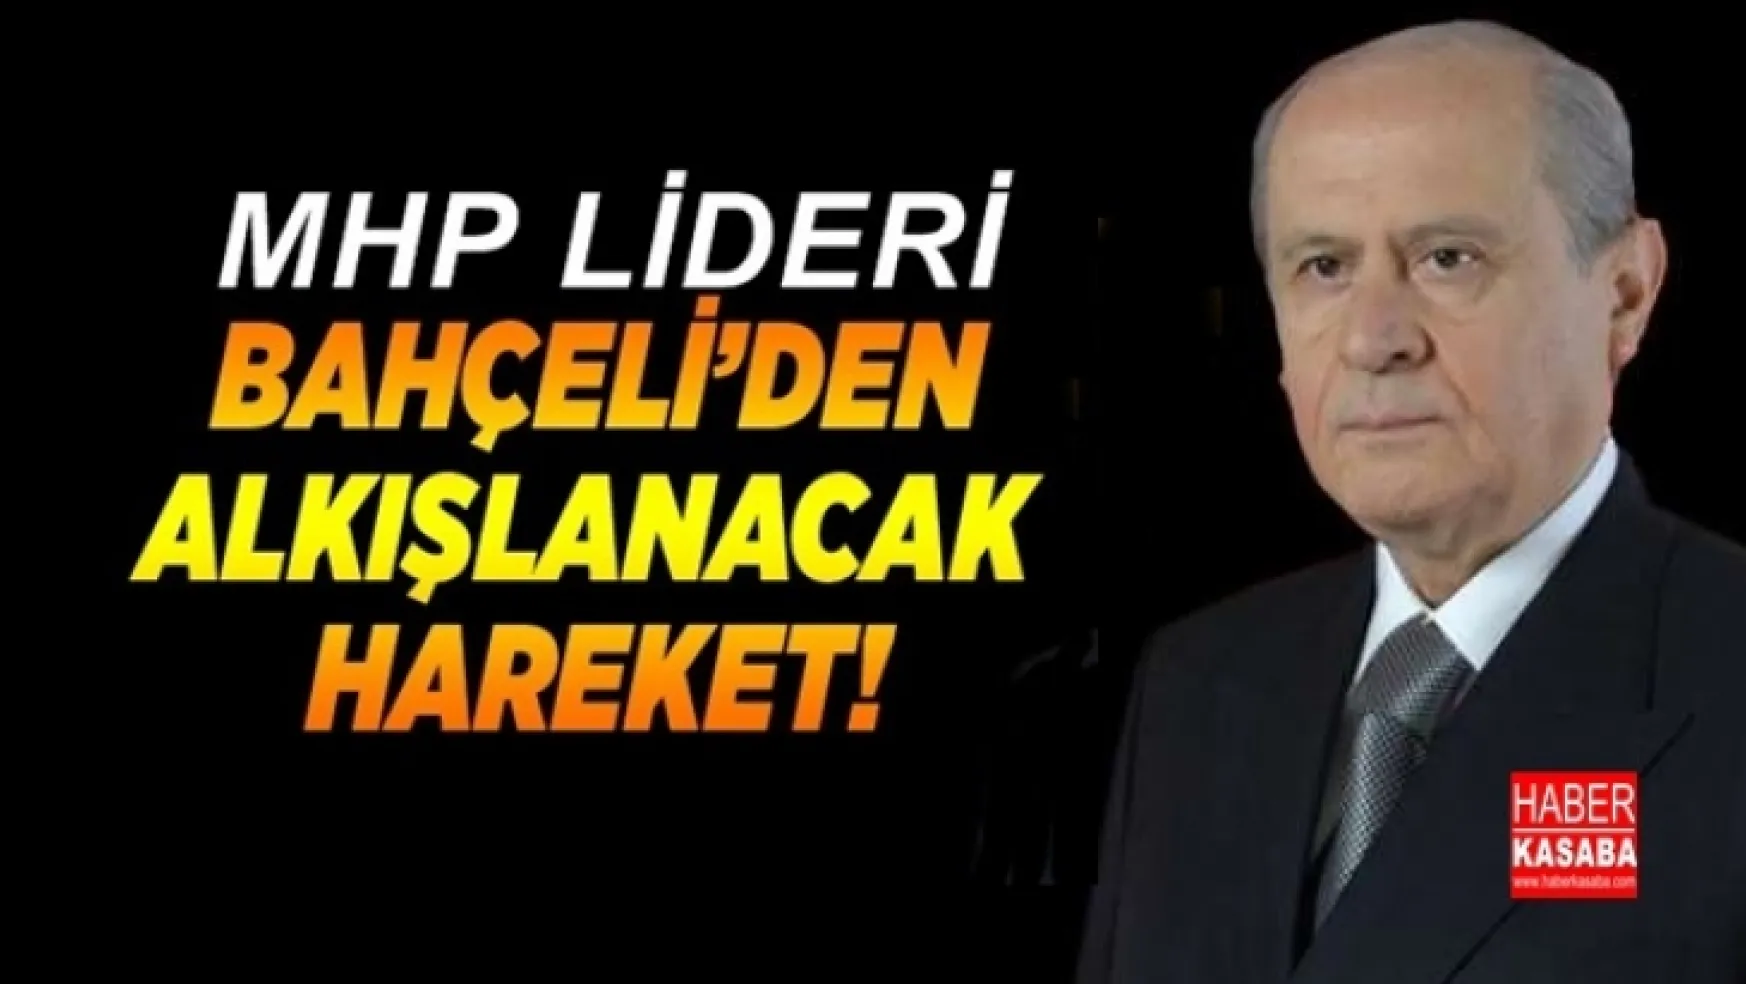 MHP lideri Bahçeli'den alkışlanacak hareket!